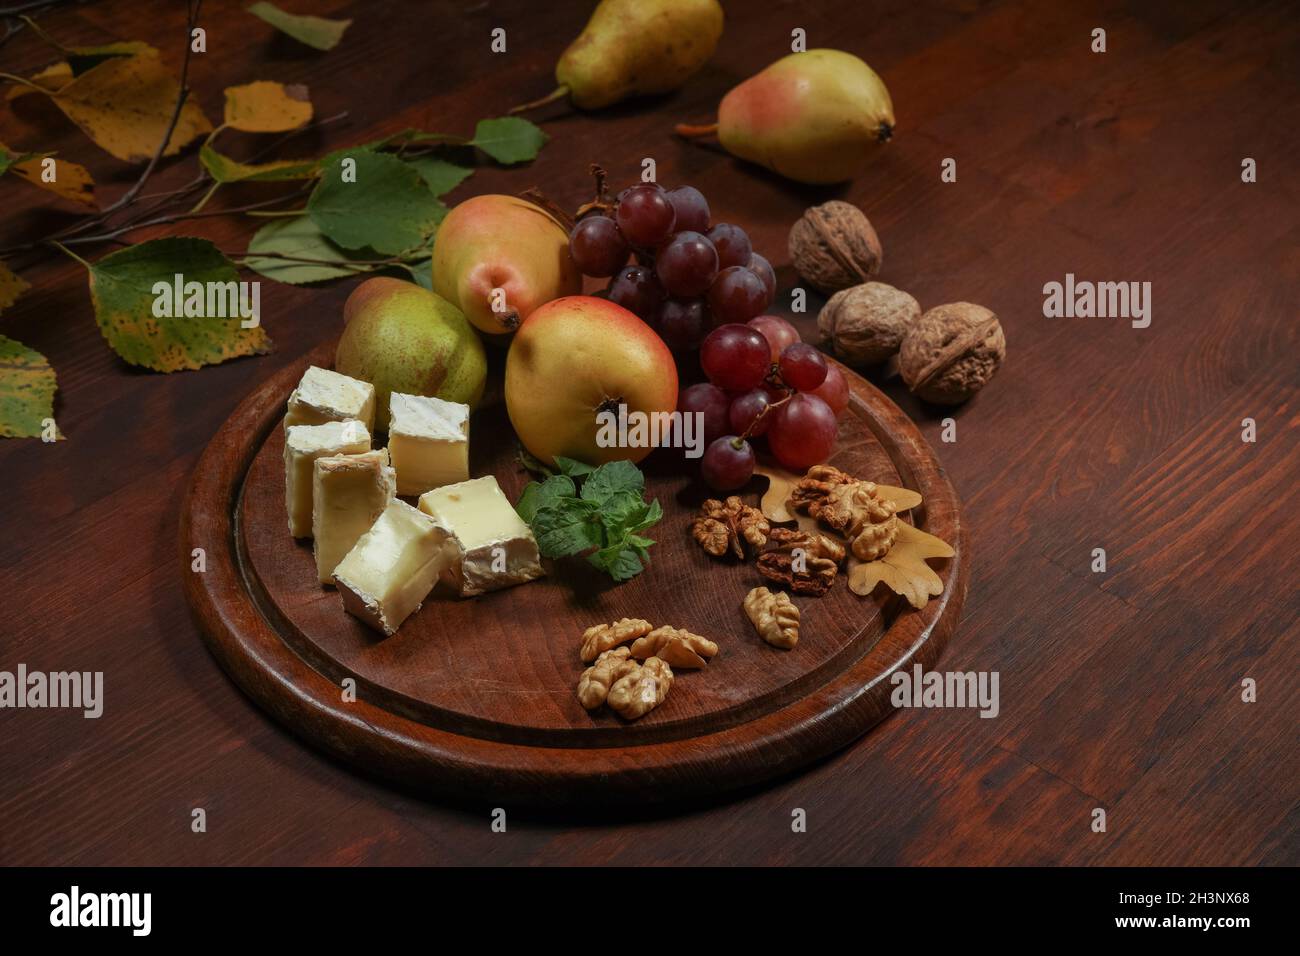 Bestes Wein-Snack-Set: Käse, Trauben, Birne und drei Walnüsse auf einem Holztisch. Brie-Käse mit Früchten, Trauben, Walnüssen auf einem da Stockfoto